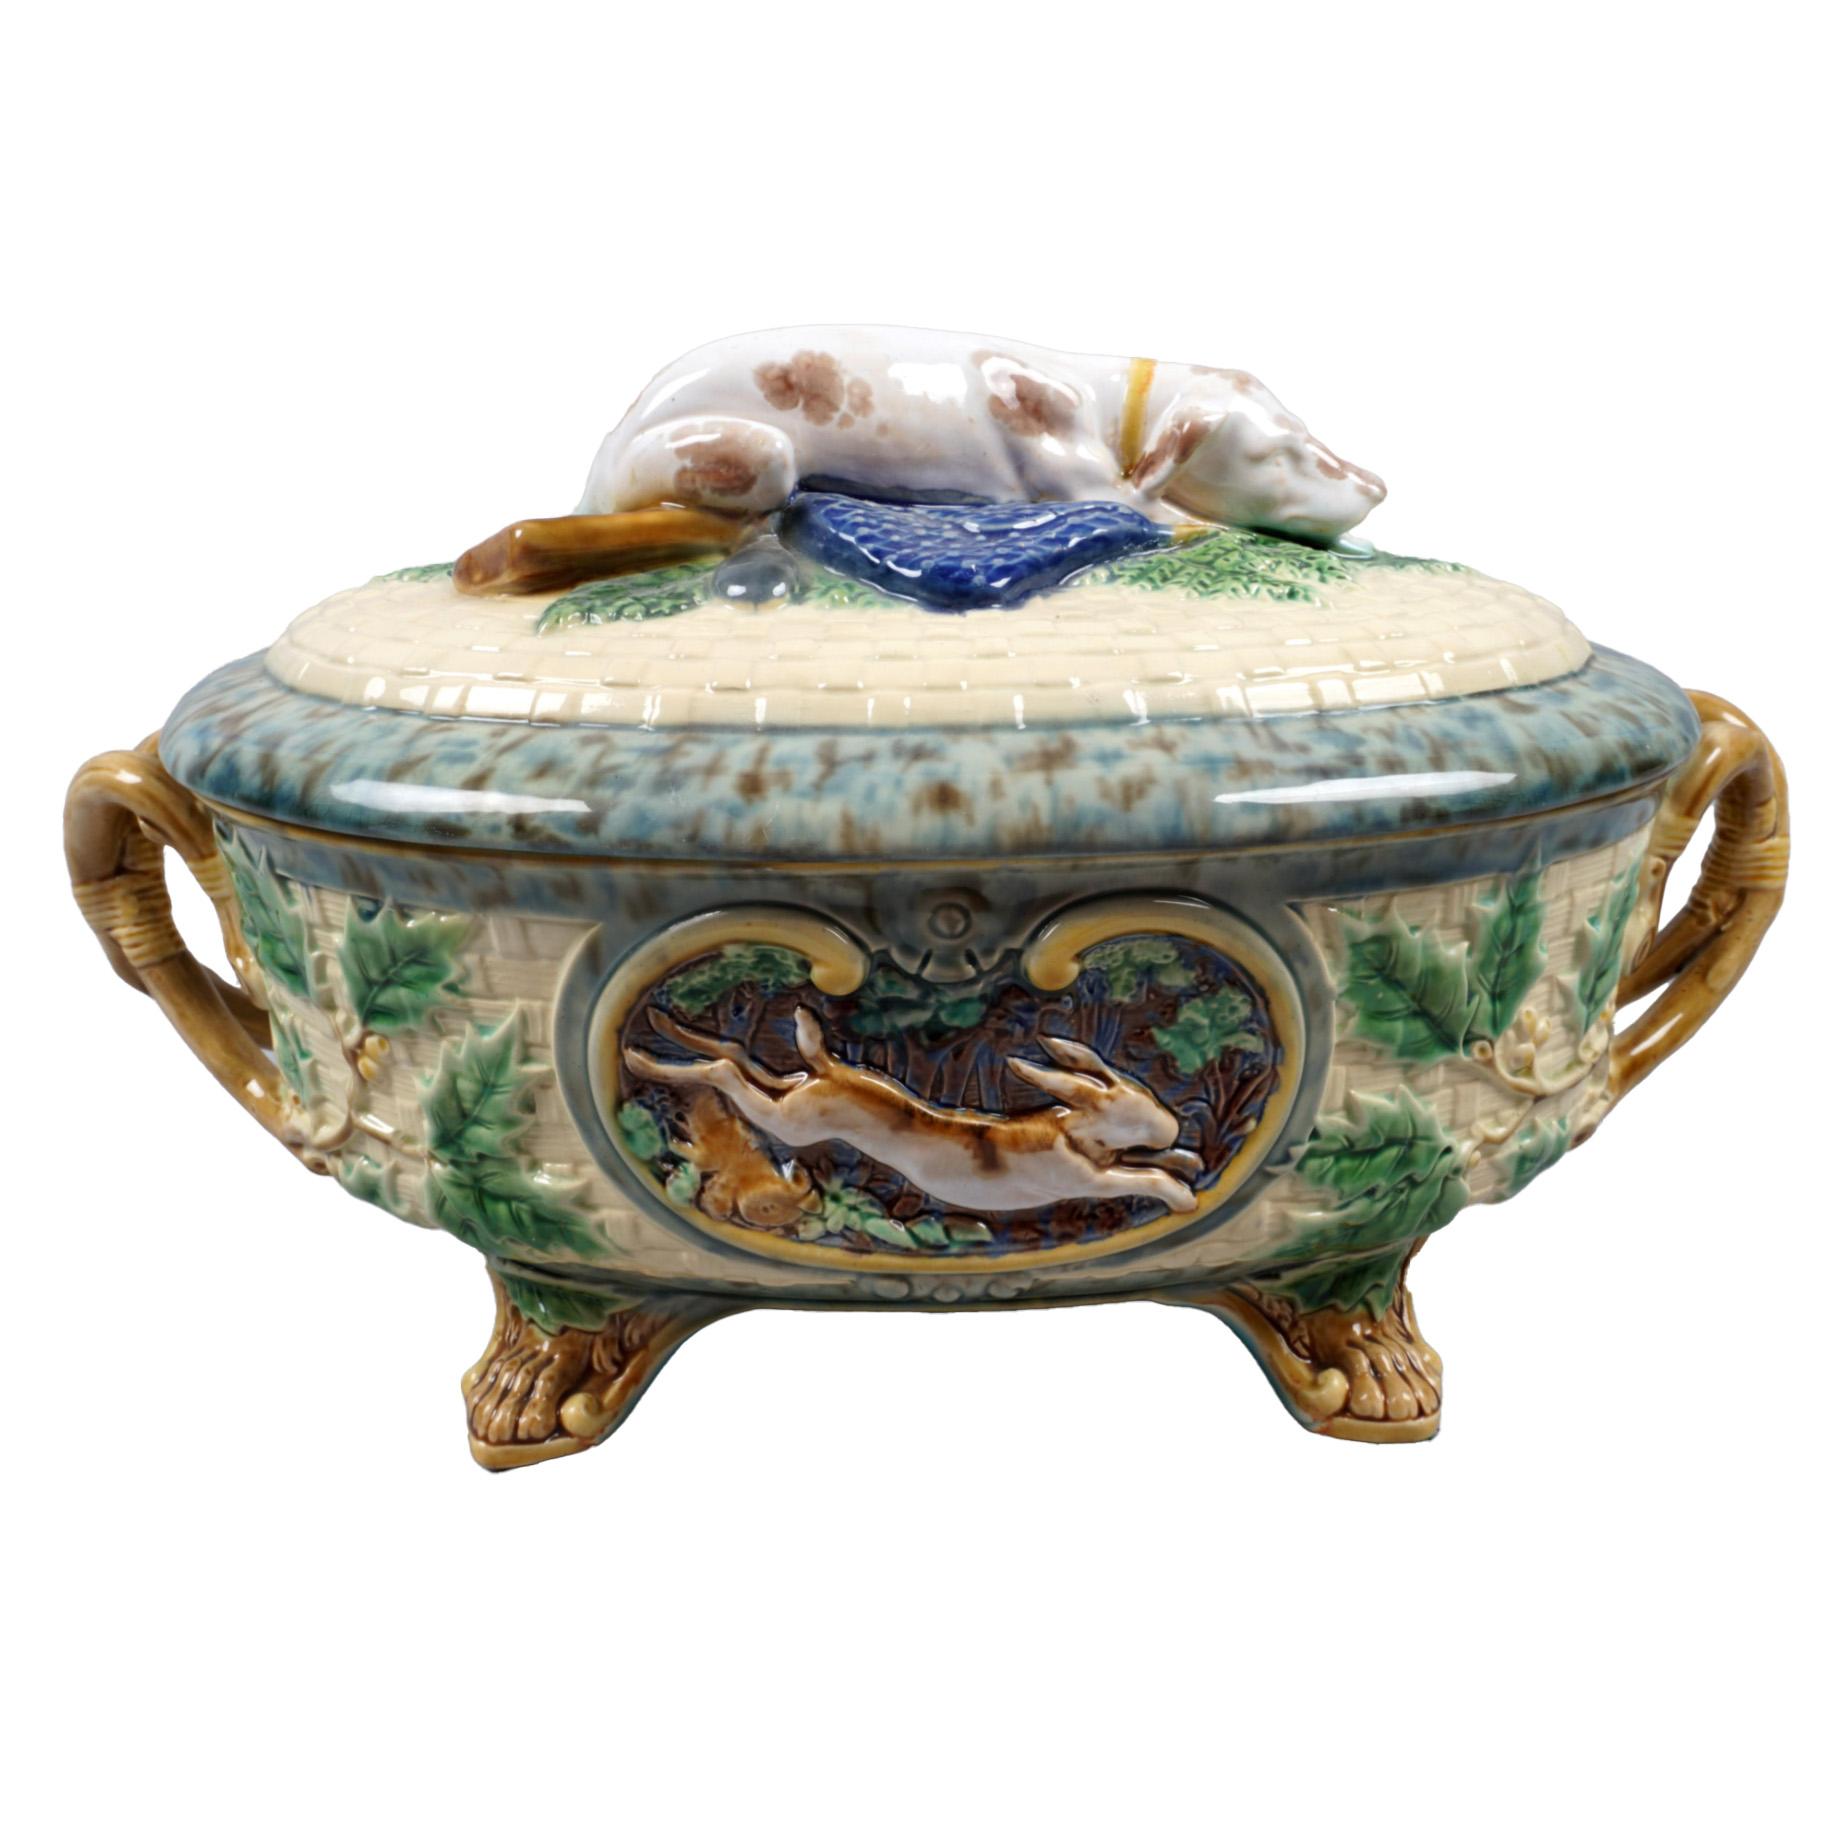 Diese Minton-Majolika-Spielkuchenterrine aus dem späten 19. Jahrhundert und ihr Deckel geben einen Einblick in den Reichtum der viktorianischen Küche. Das Titelbild zeigt einen sorgfältig modellierten Jagdhund inmitten von Farnen und erinnert an